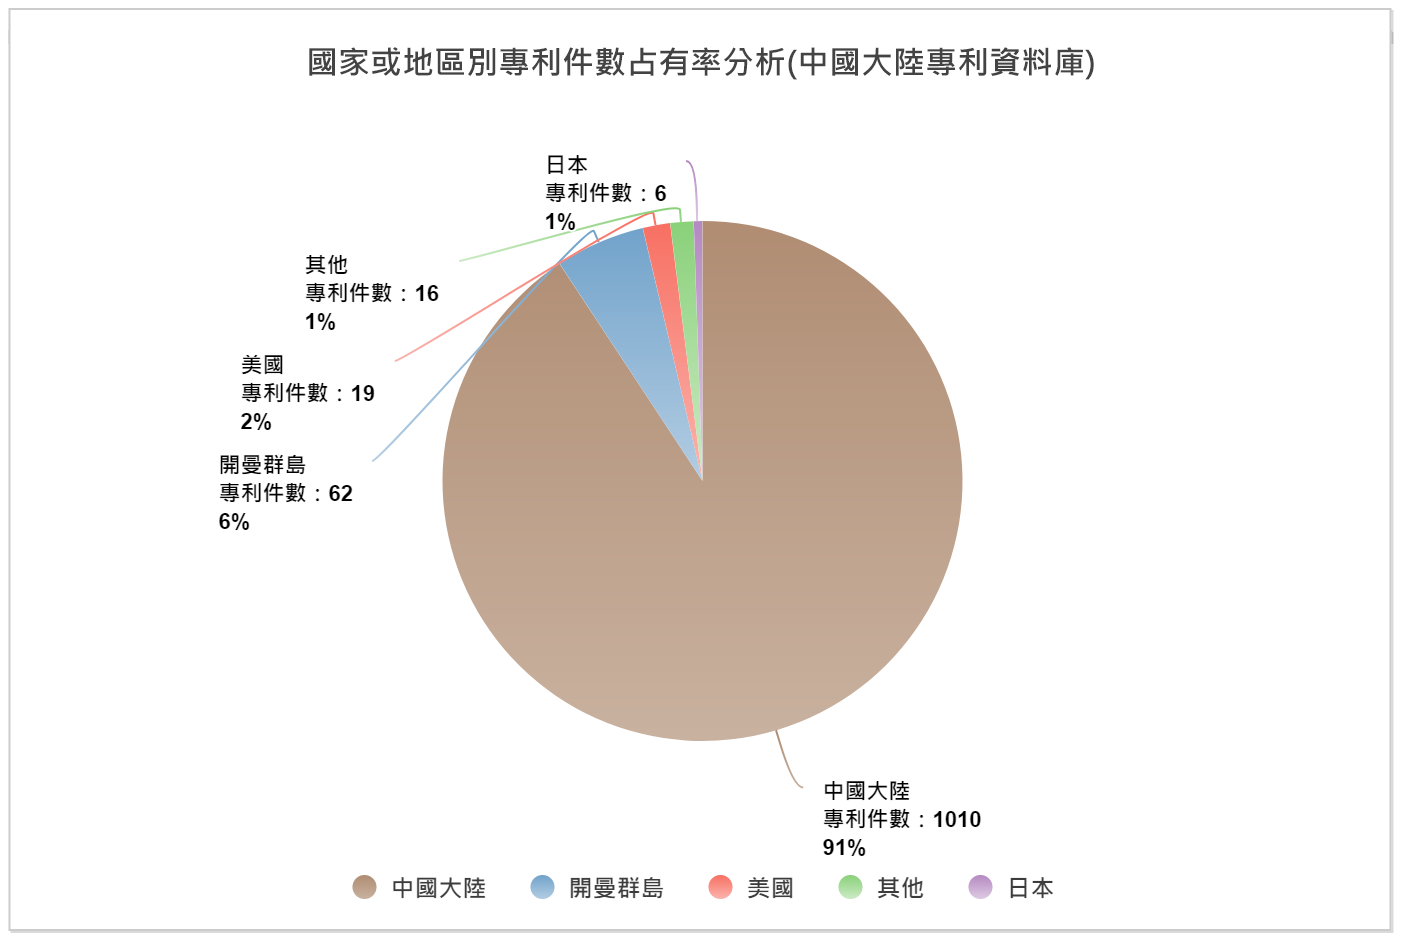 國家或地區別專利件數占有率分析圖(中國大陸專利資料庫)